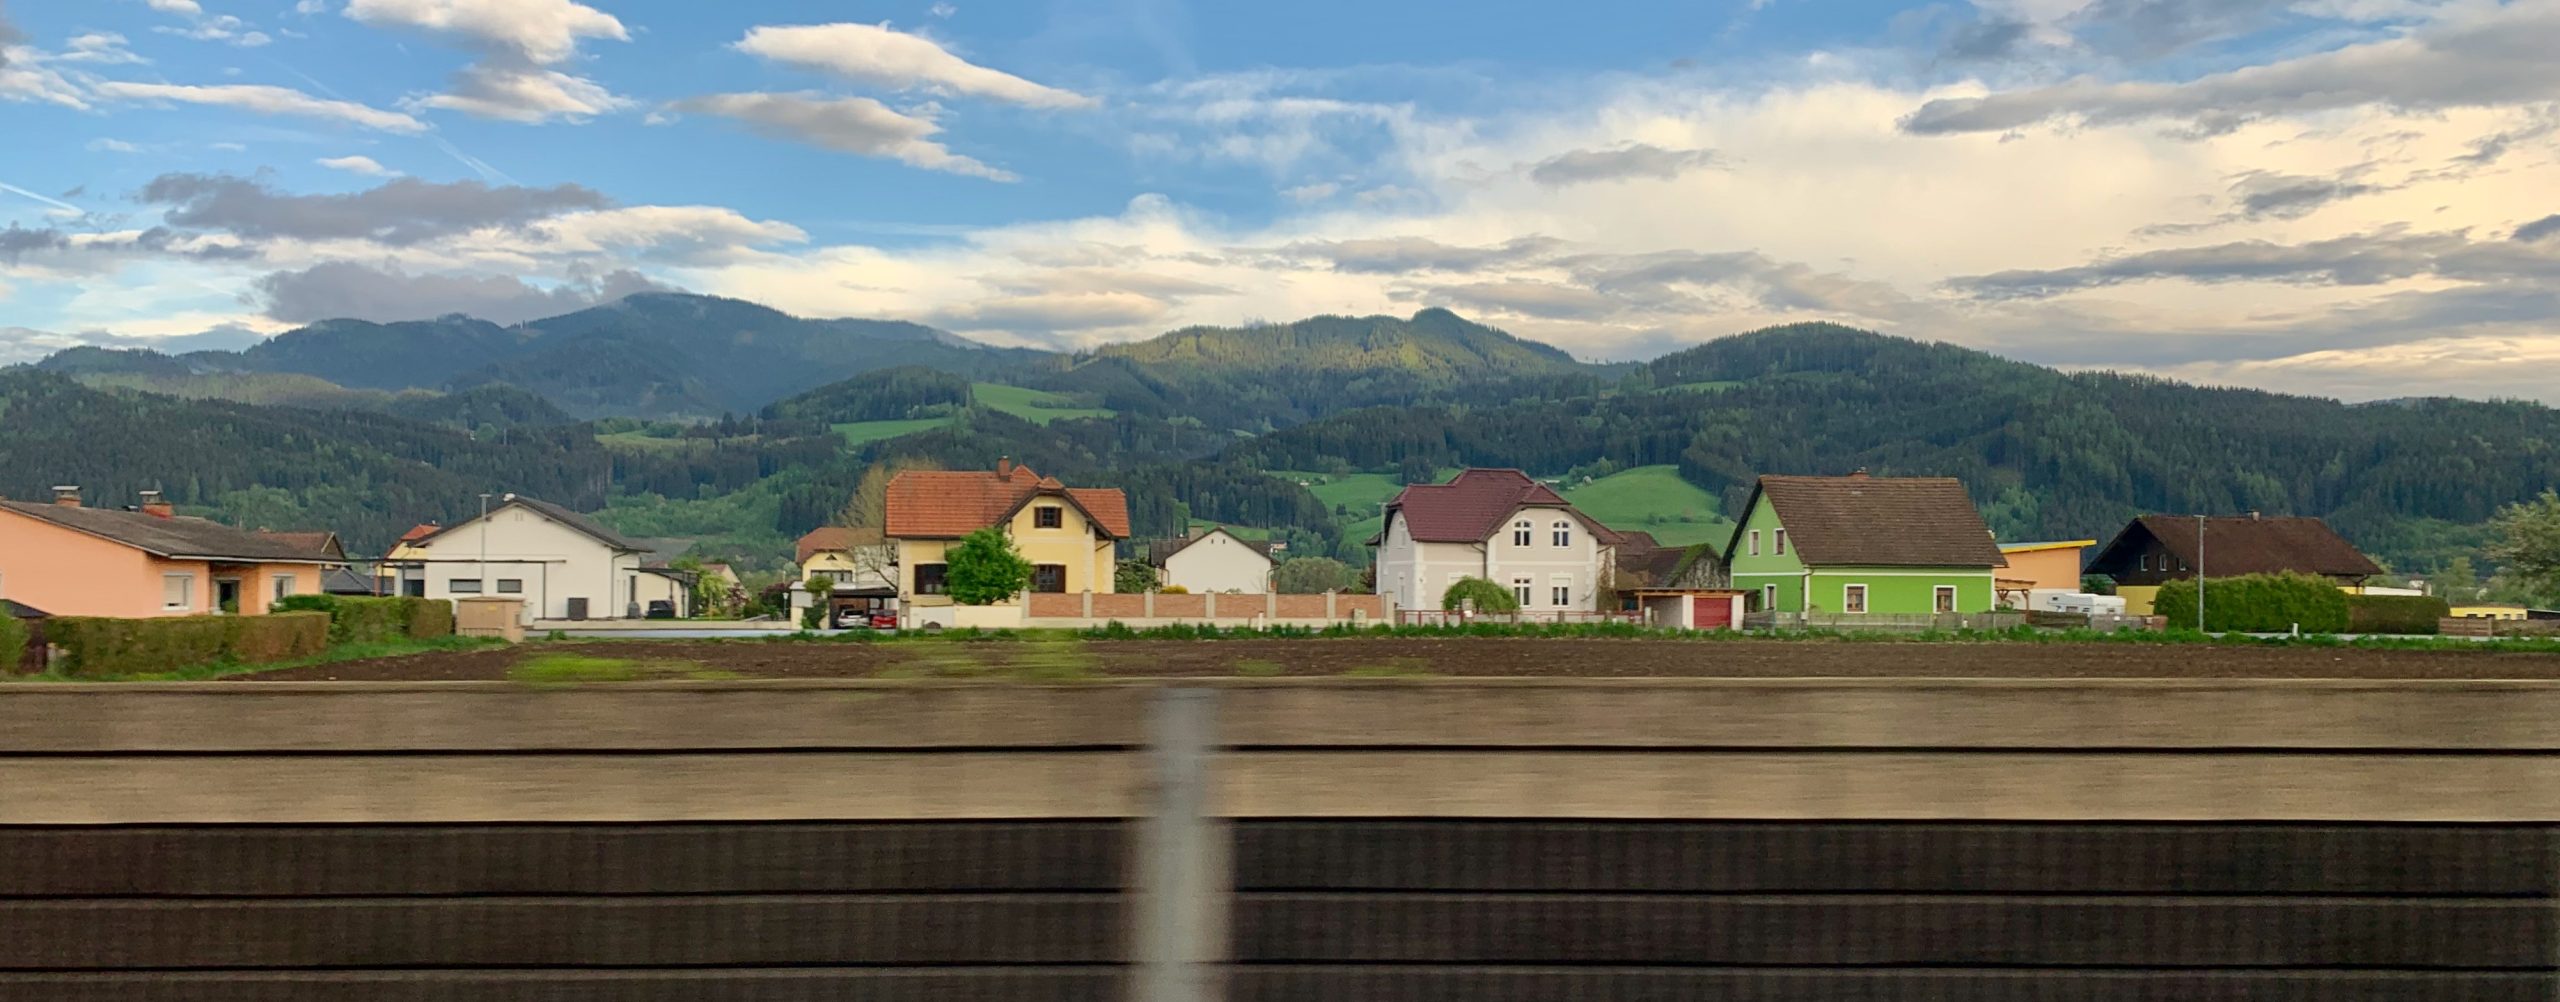 Leerstandskonferenz 2022: Ideen aus Deutschland und Österreich für das halbleere Einfamilienhaus Foto (c) nonconform